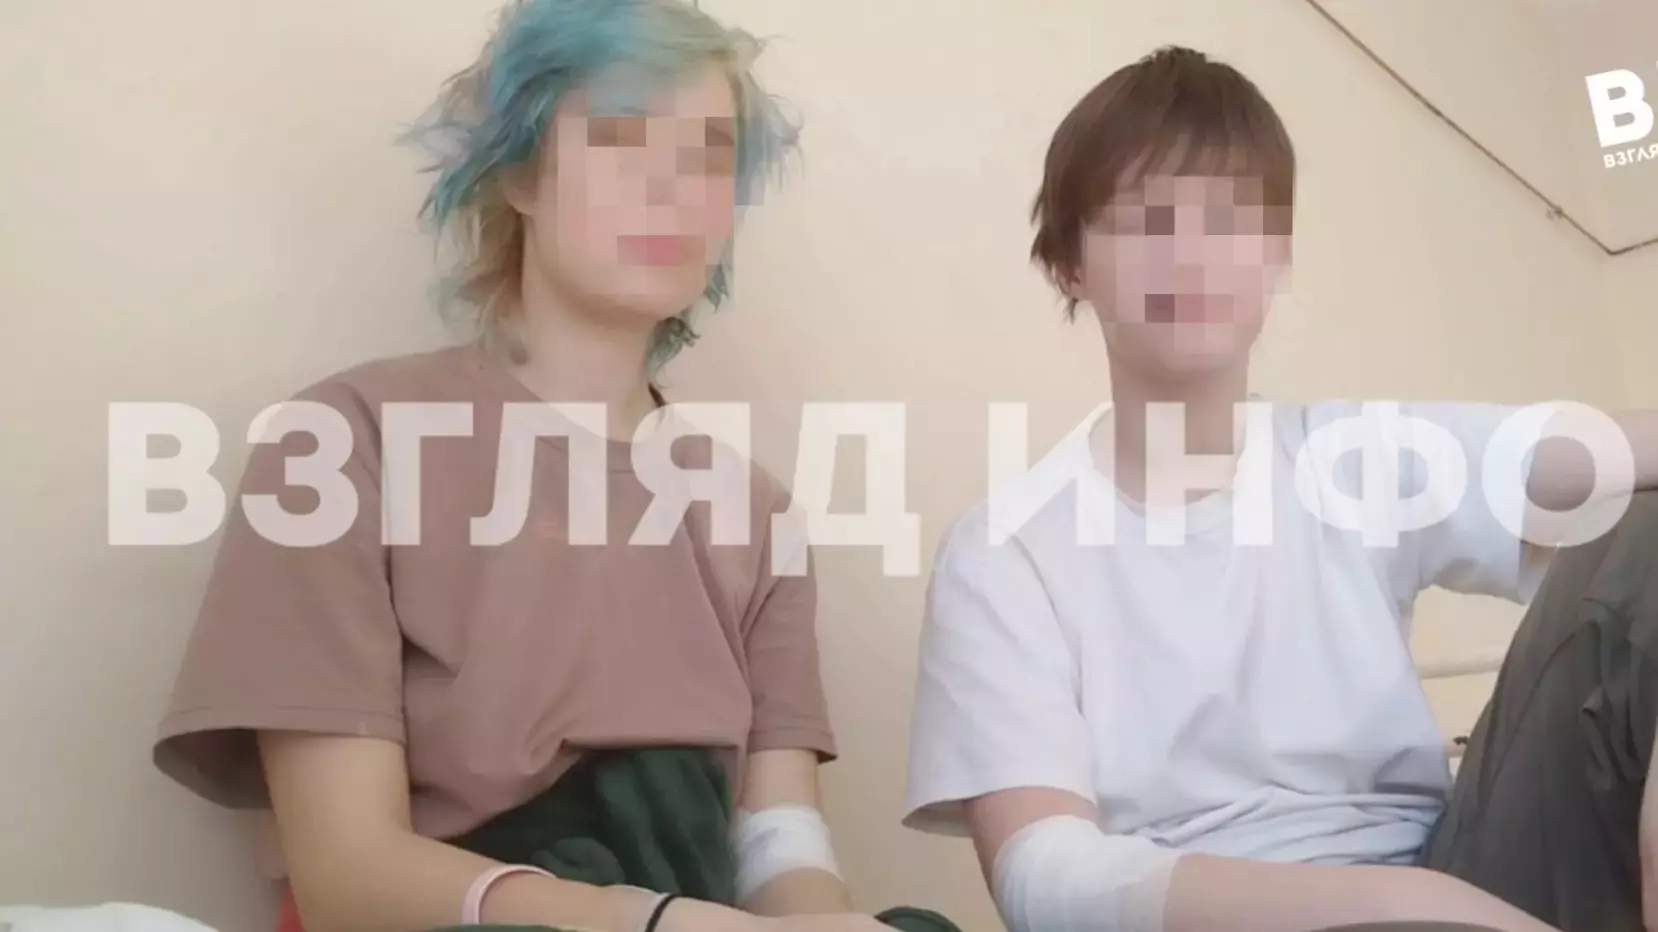 СК возбудил дело об избиении девушек из-за цветных коротких стрижек в Минусинске